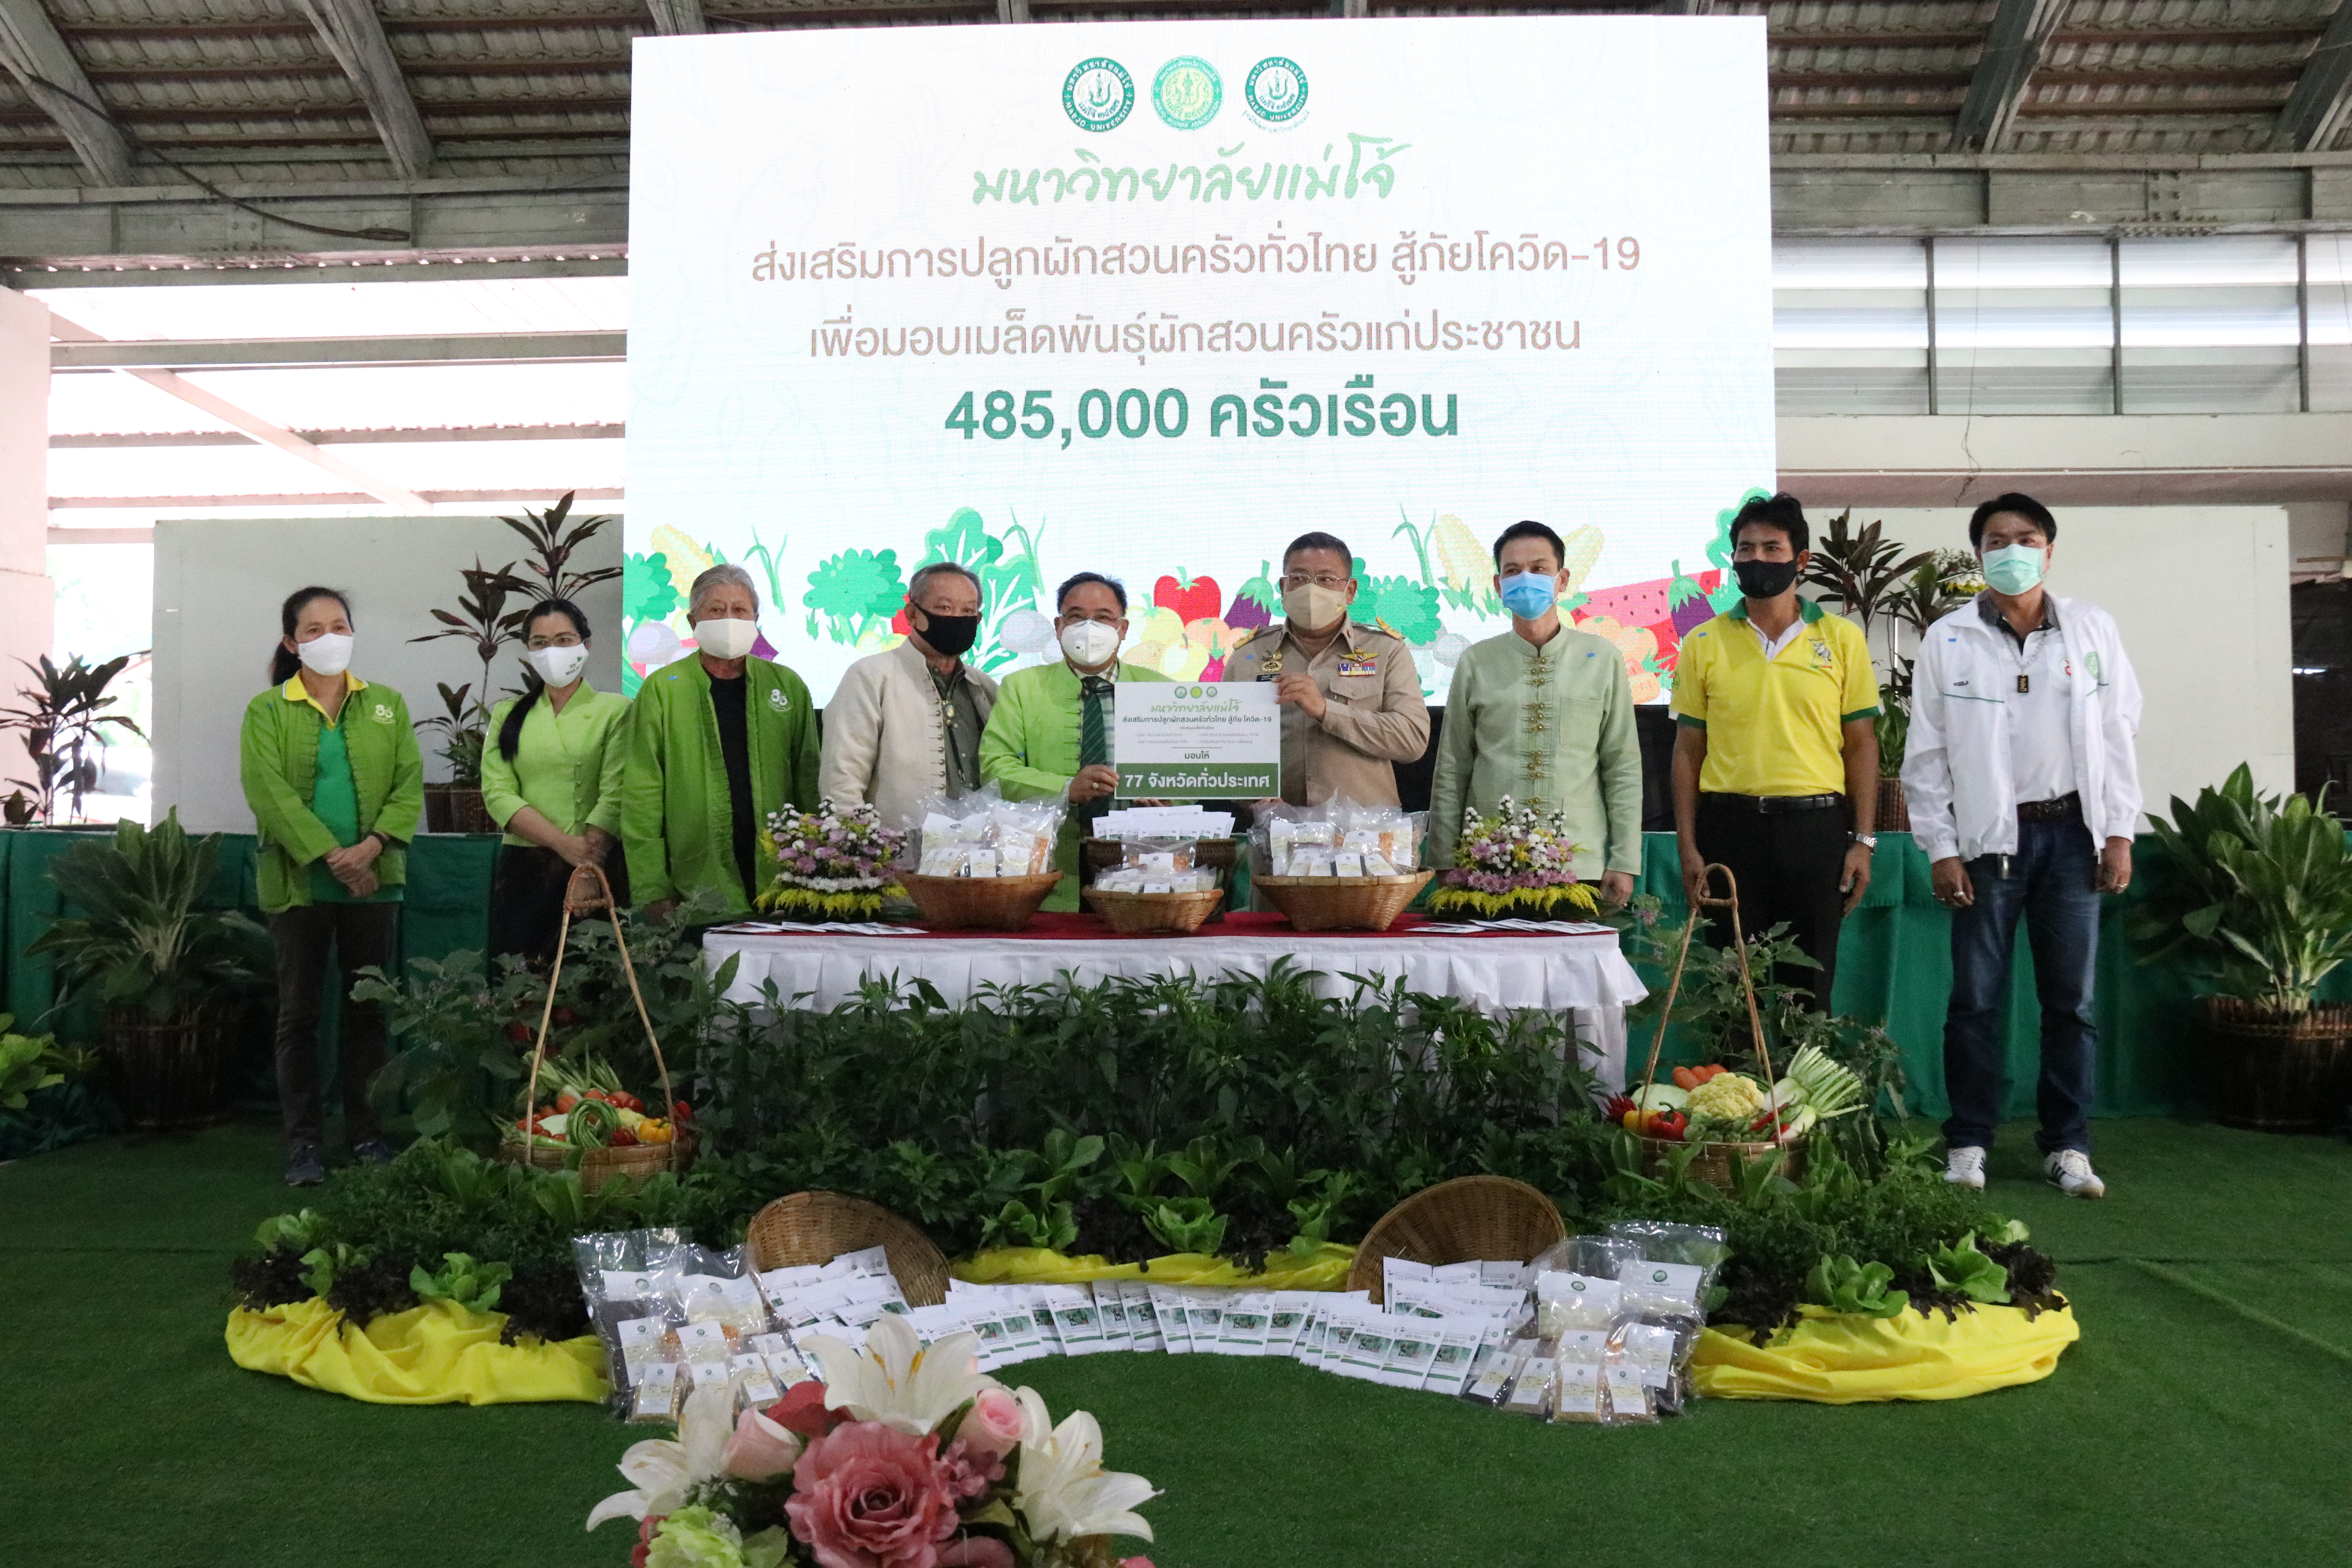 ม.แม่โจ้ พร้อมส่งมอบเมล็ดพันธุ์ผัก 485,000 ชุดให้ประชาชน 77 จังหวัดทั่วไทยสู้ภัยโควิด-19